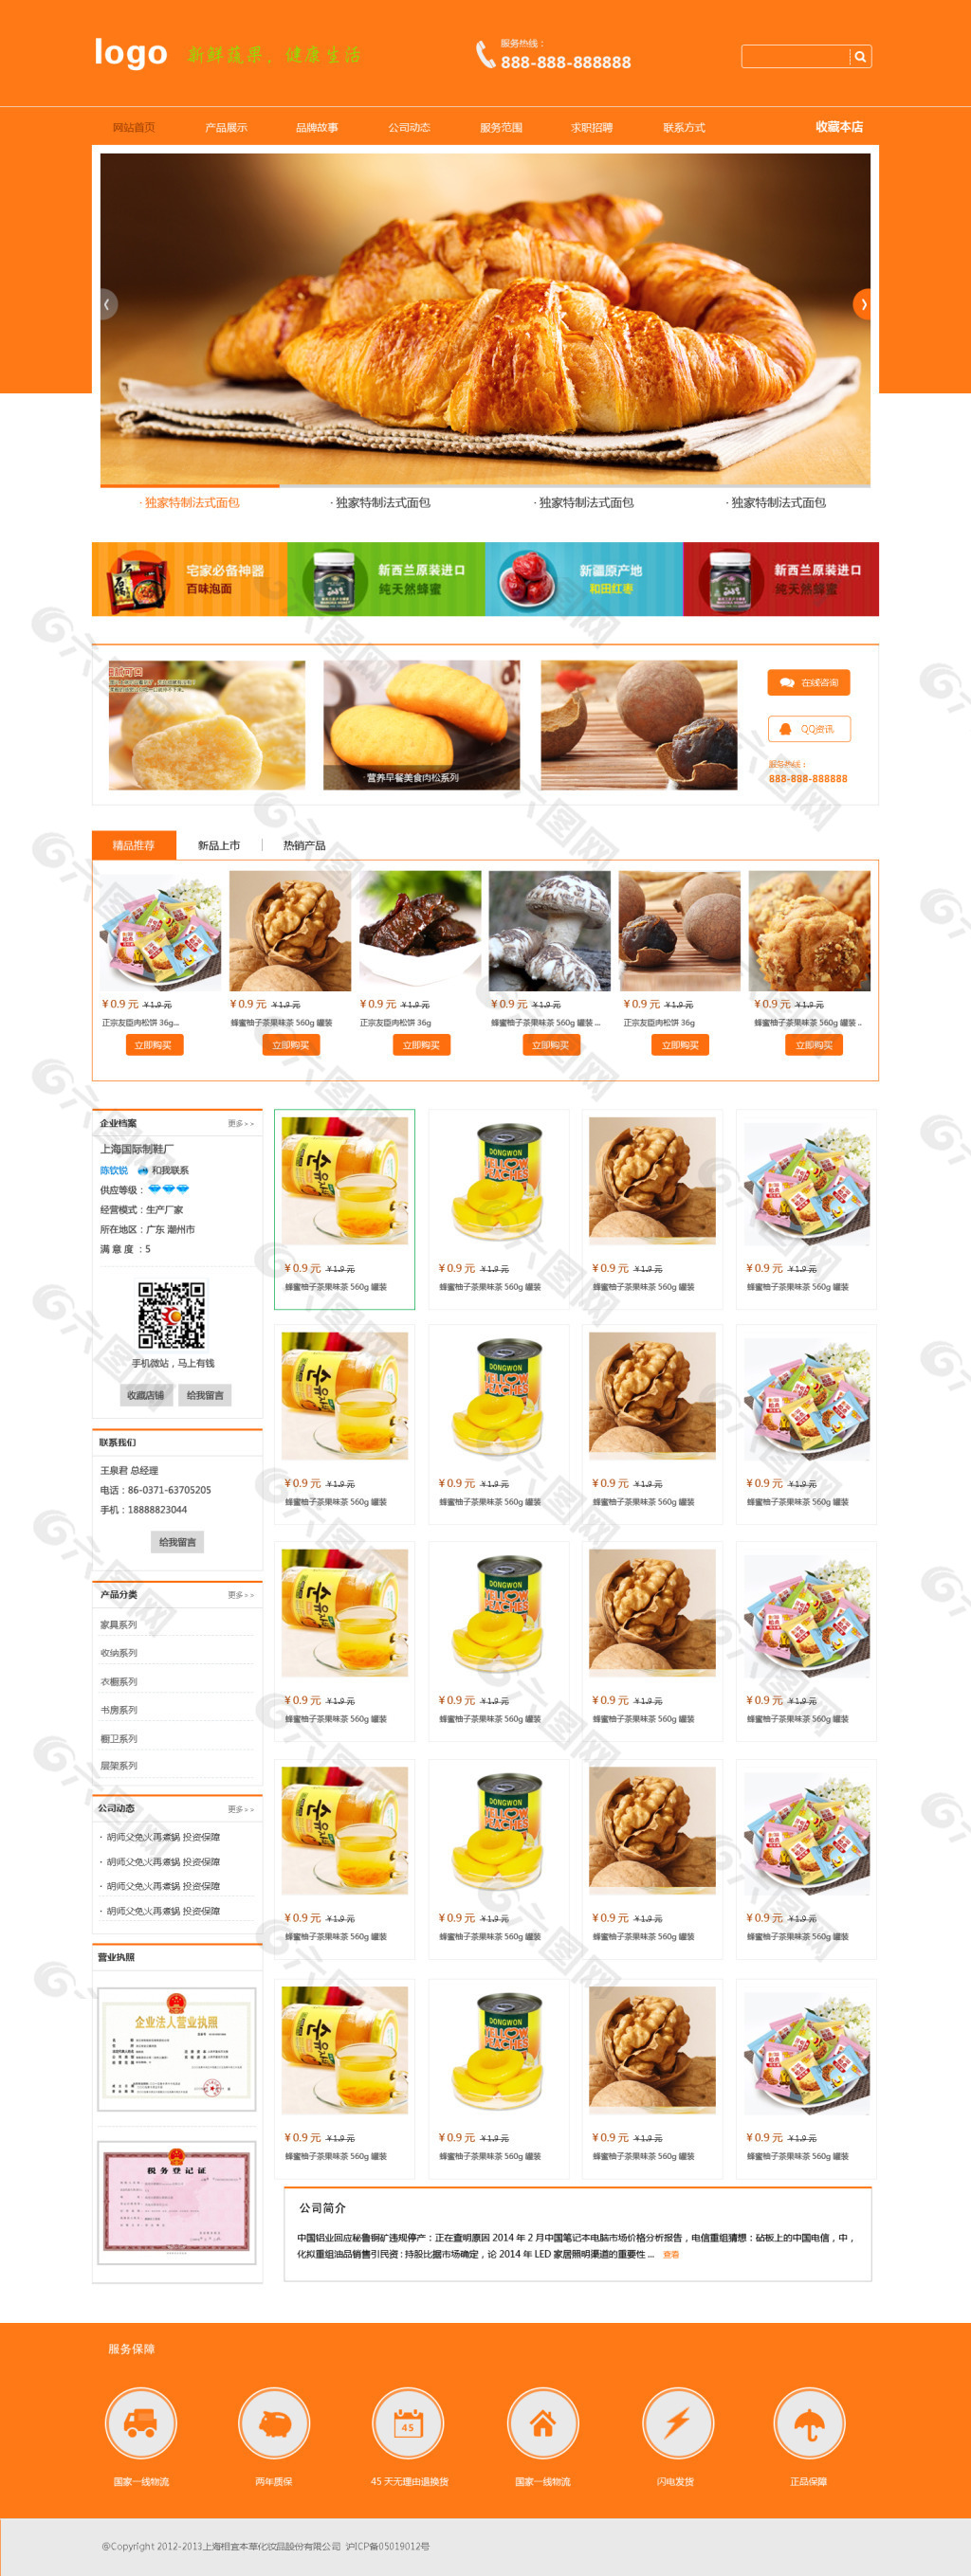 食品素材图网站大全图片